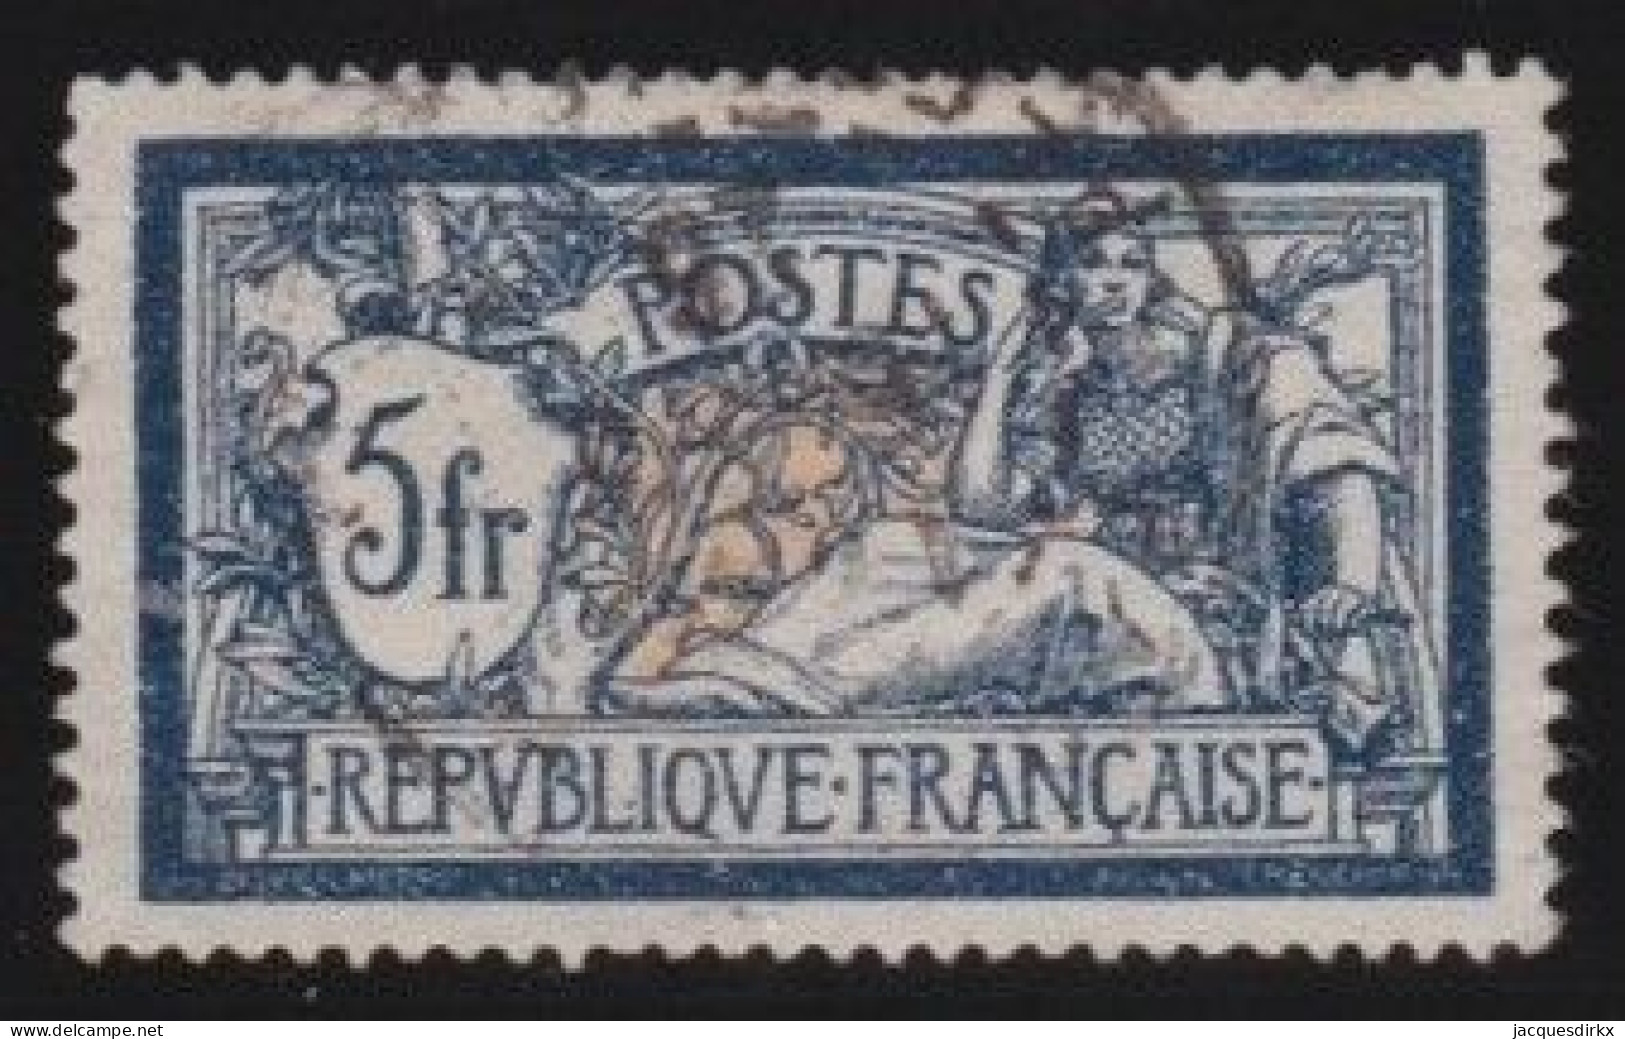 France  .  Y&T   .   206    .     O   .    Oblitéré - Used Stamps